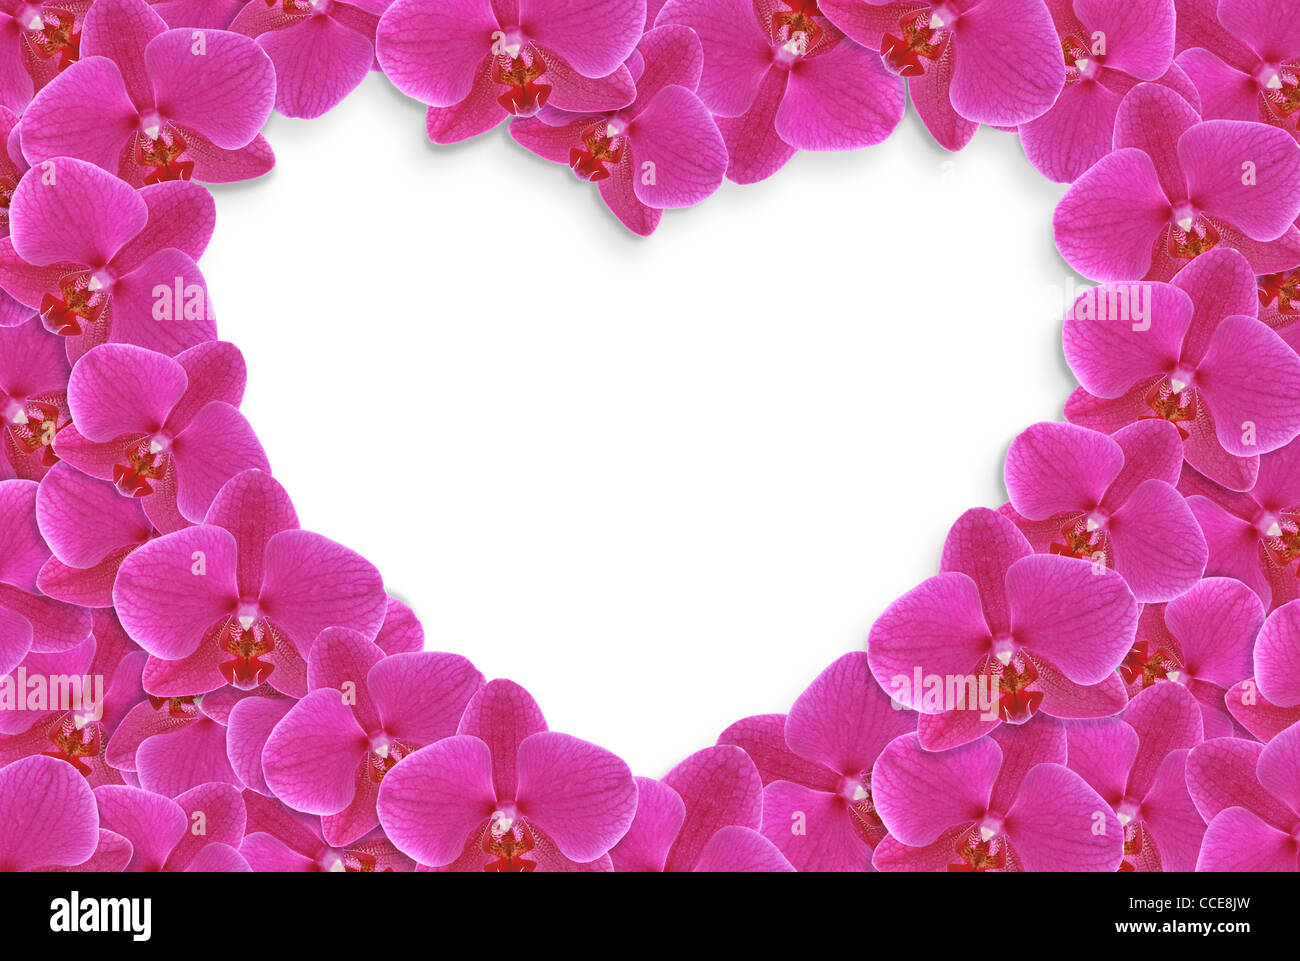 Flower heart Stock Photo